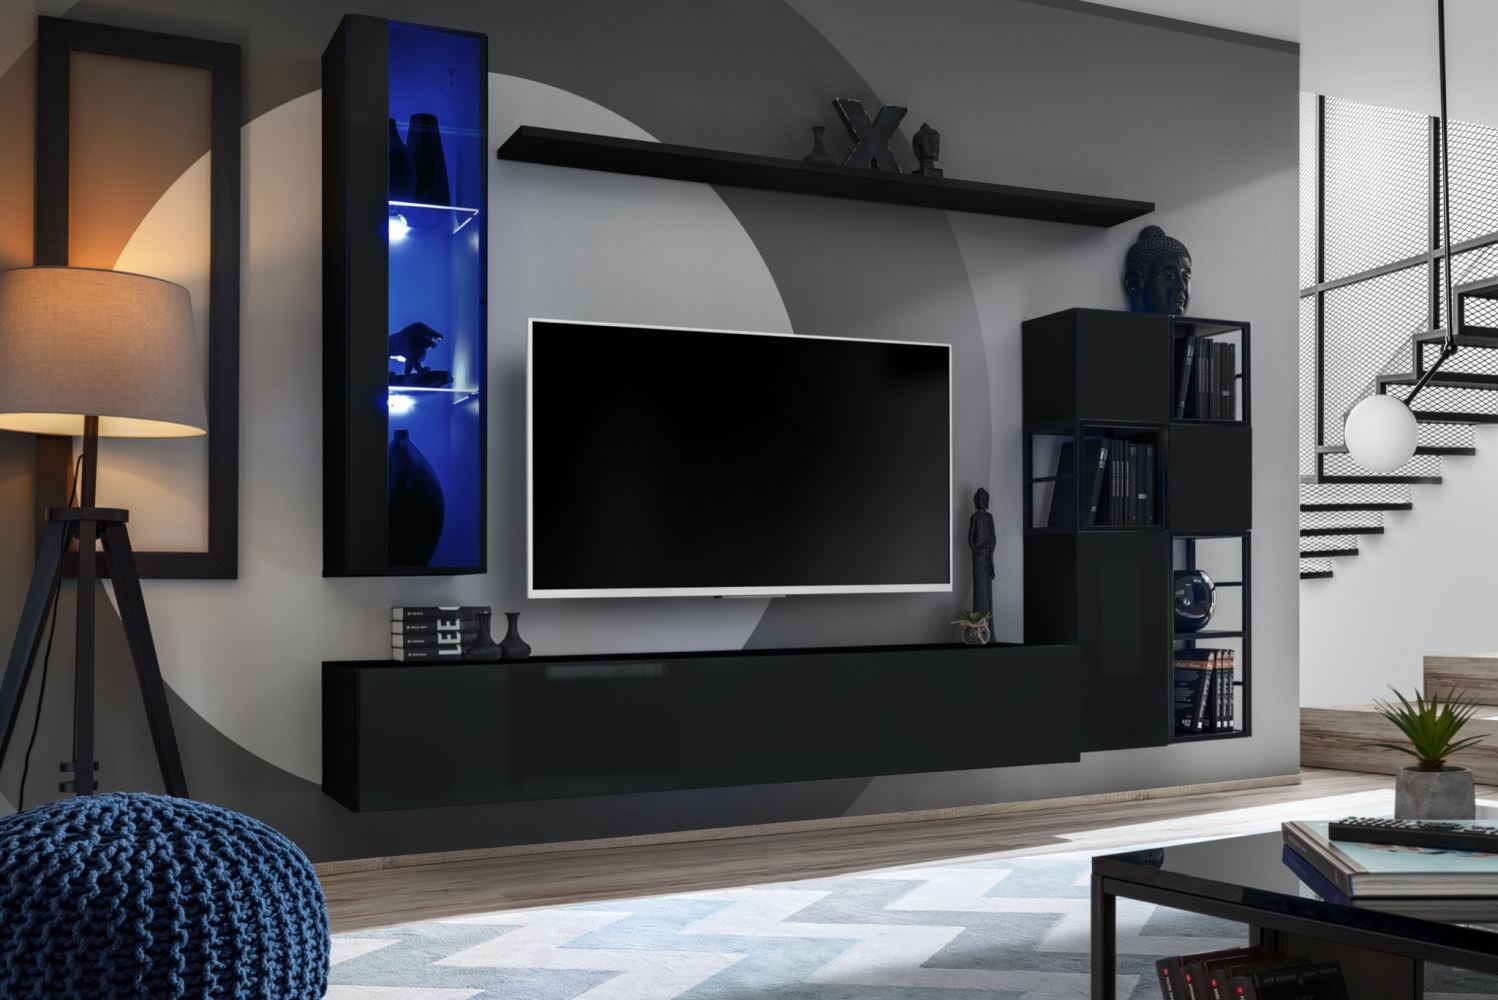 Mur de salon au design moderne Valand 06, Couleur : Noir - dimensions : 170 x 250 x 40 cm (h x l x p), avec éclairage LED bleu